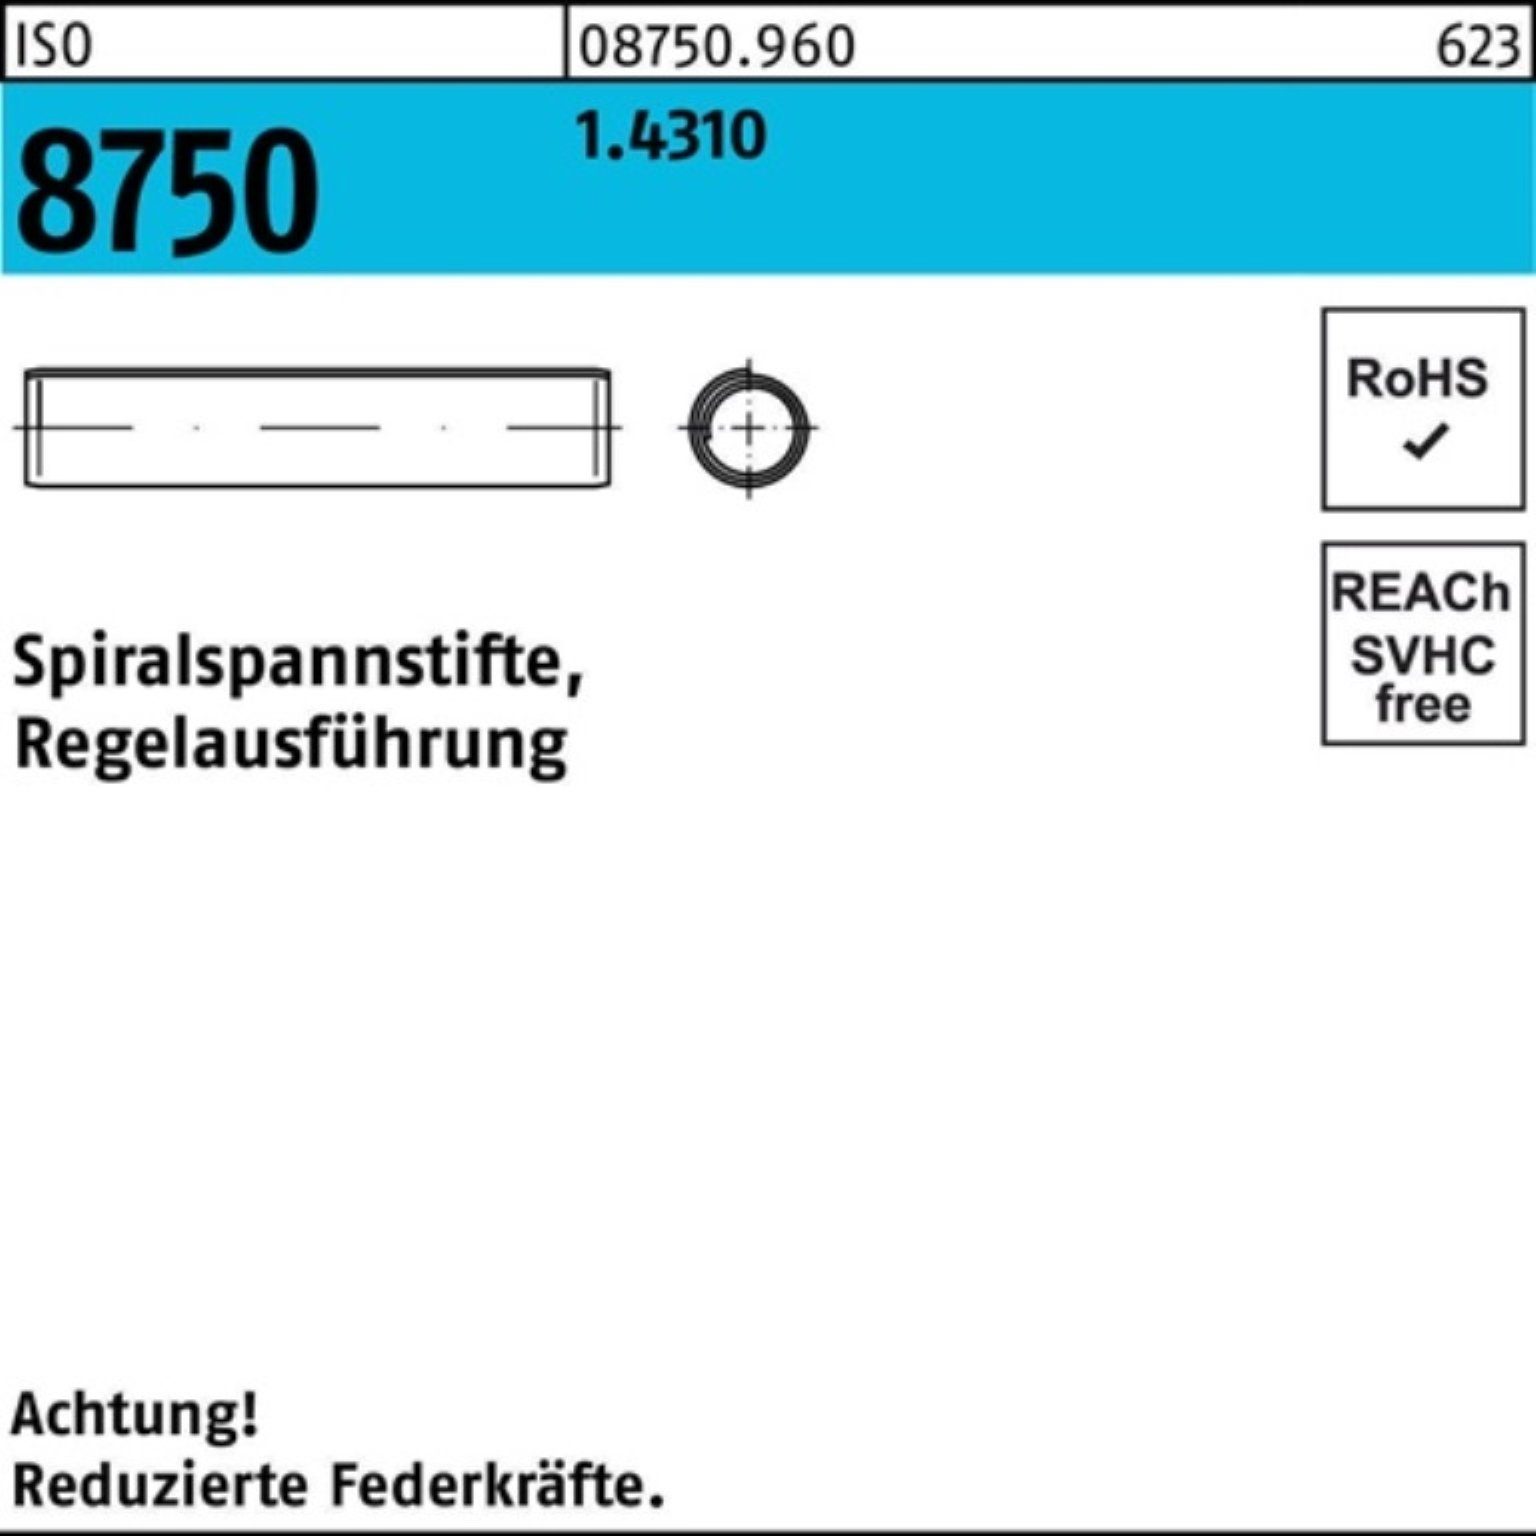 30 Stüc Spiralspannstift ISO 8750 Reyher Pack 1.4310 5x Spannstift 500 Regelausf. 500er